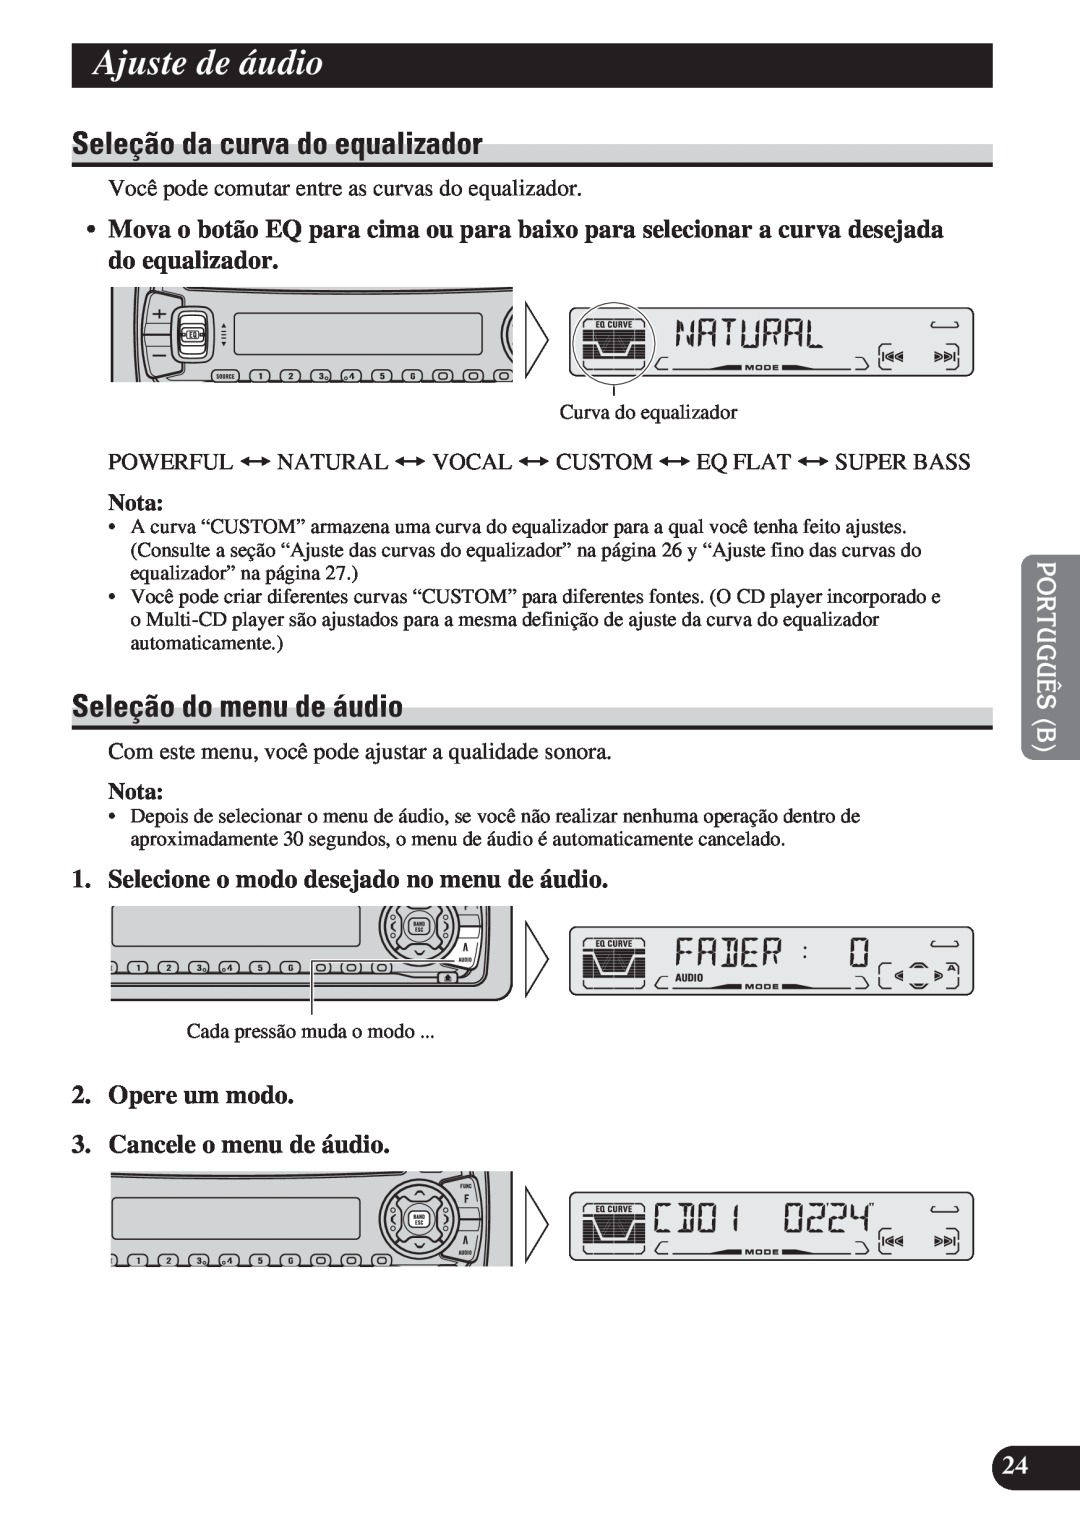 Pioneer DEH-P3150 operation manual Ajuste de áudio, Seleção da curva do equalizador, Seleção do menu de áudio, Nota 